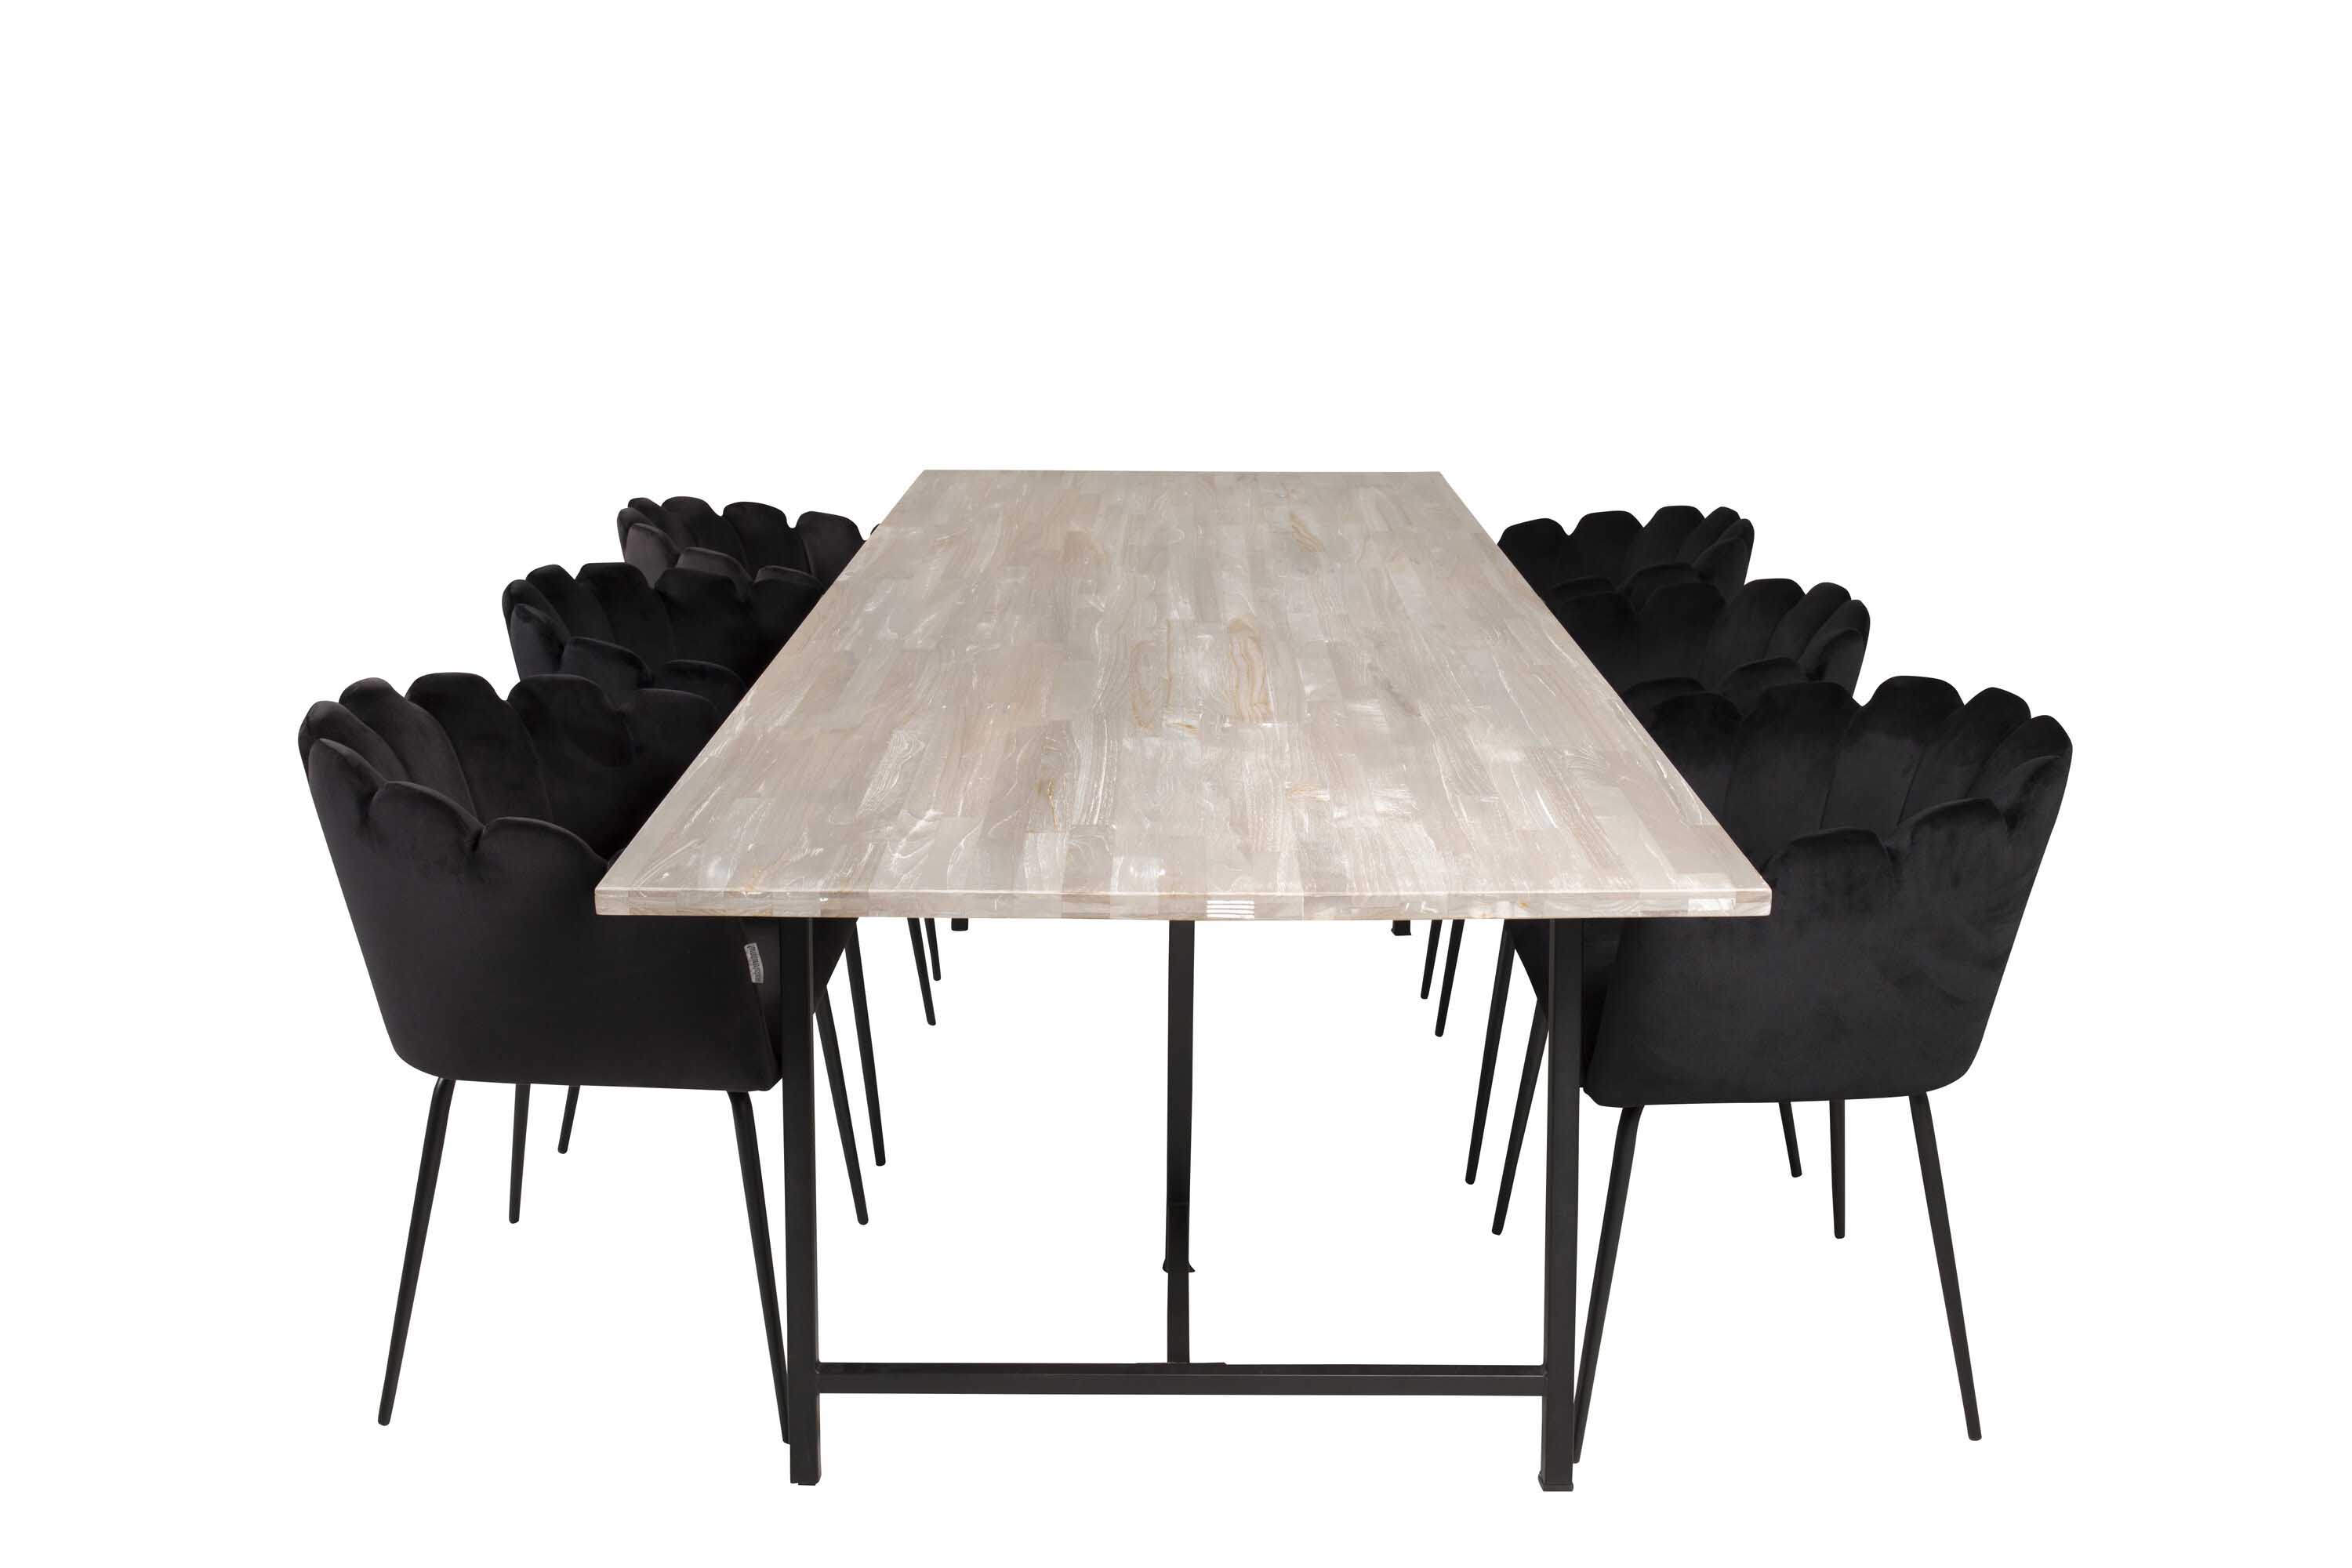 Venture Design Jepara & Limhamn spisegruppe Grå/svart 6 st stoler & bord 250 x 100 cm